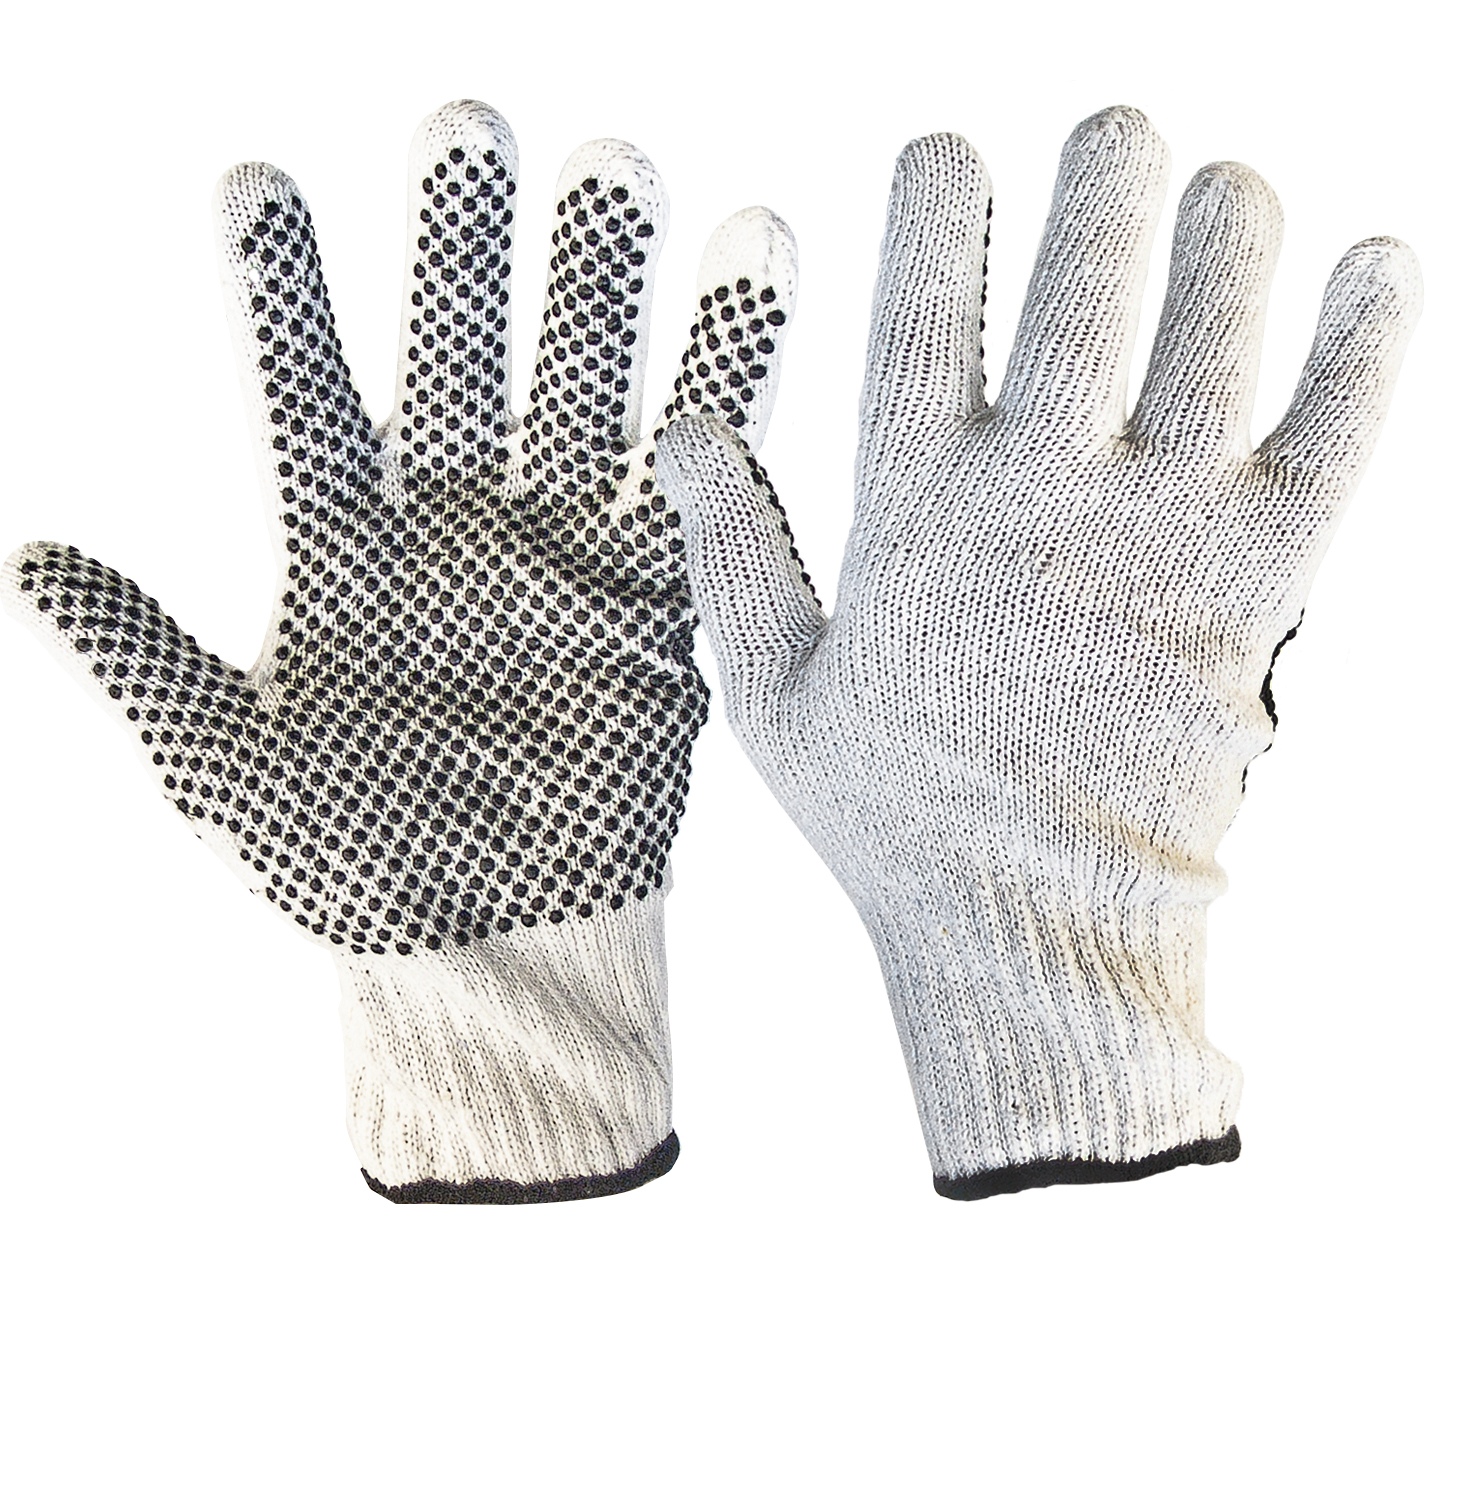 WSP Cotton Knitted Polkadot Glove - Safetyworx